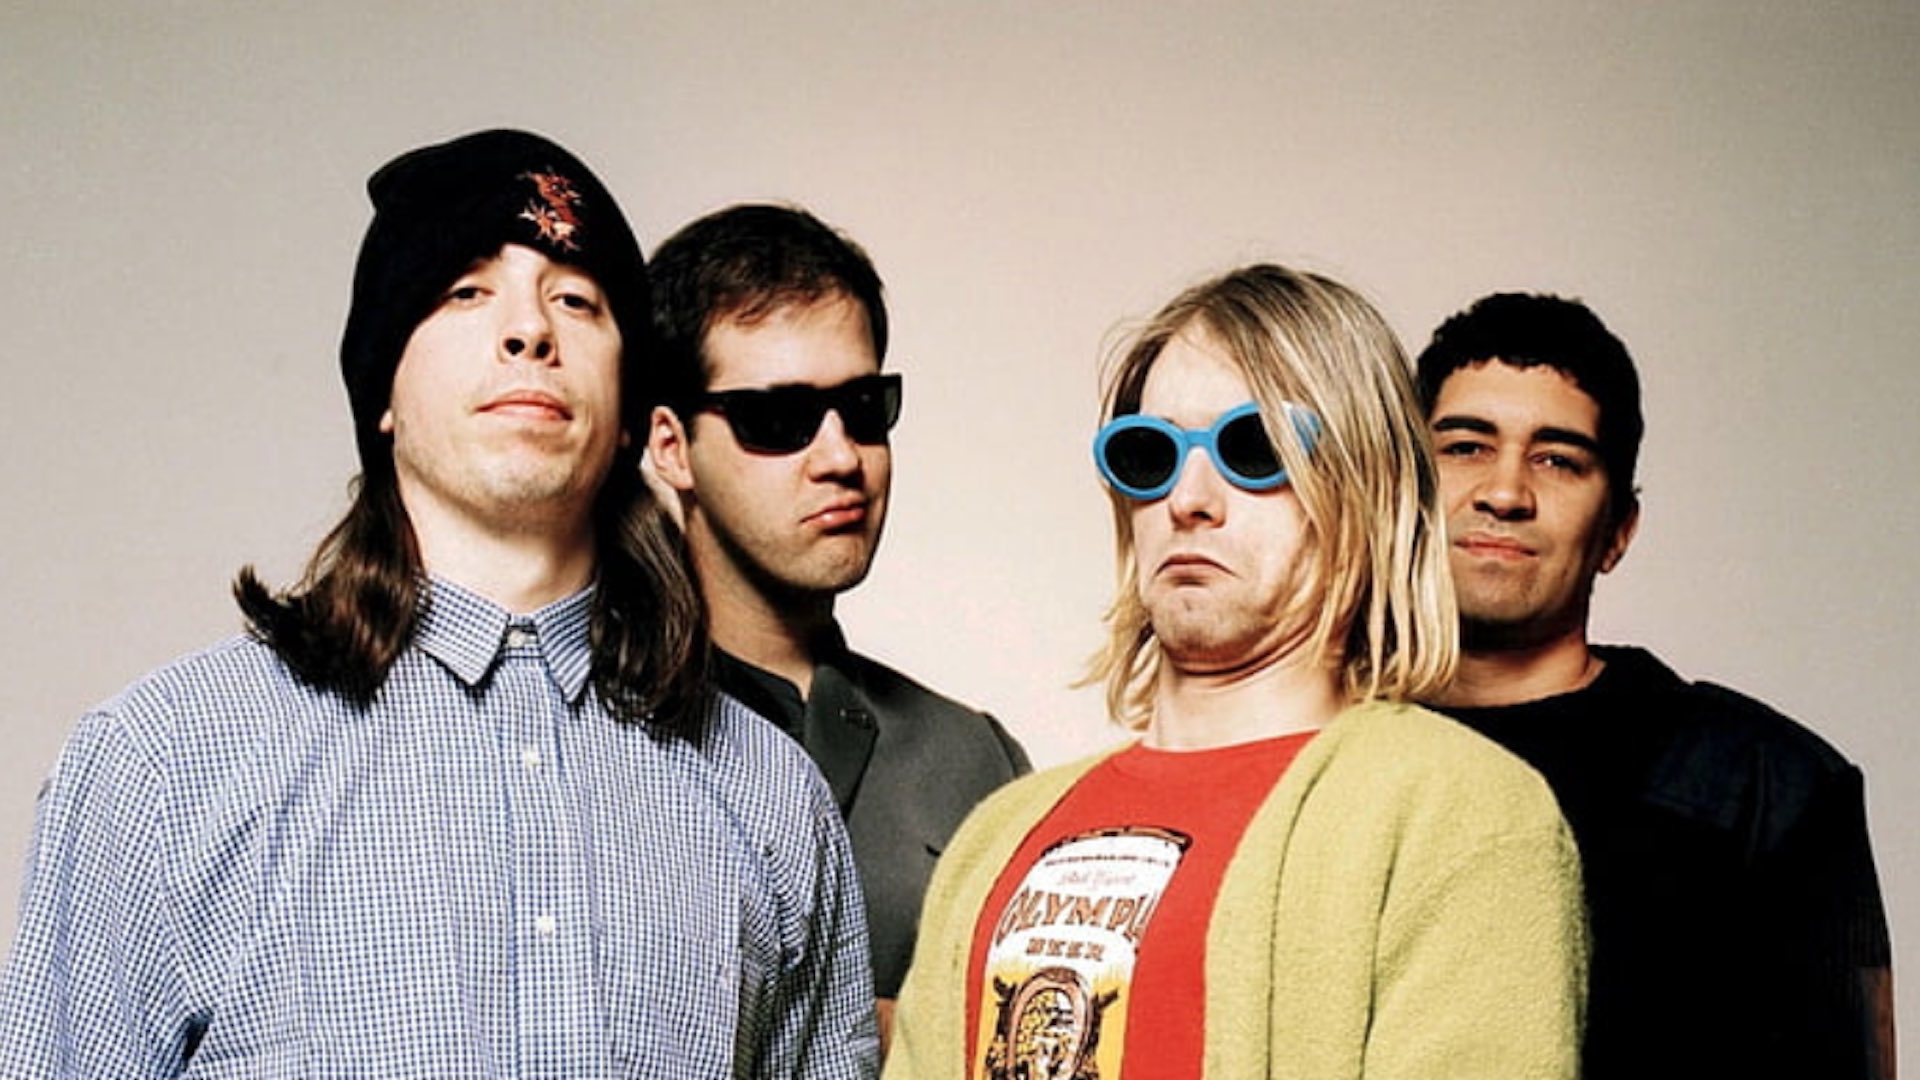 #MañanasX: La BBC Celebrará los 30 años del 'Nevermind ' de Nirvana